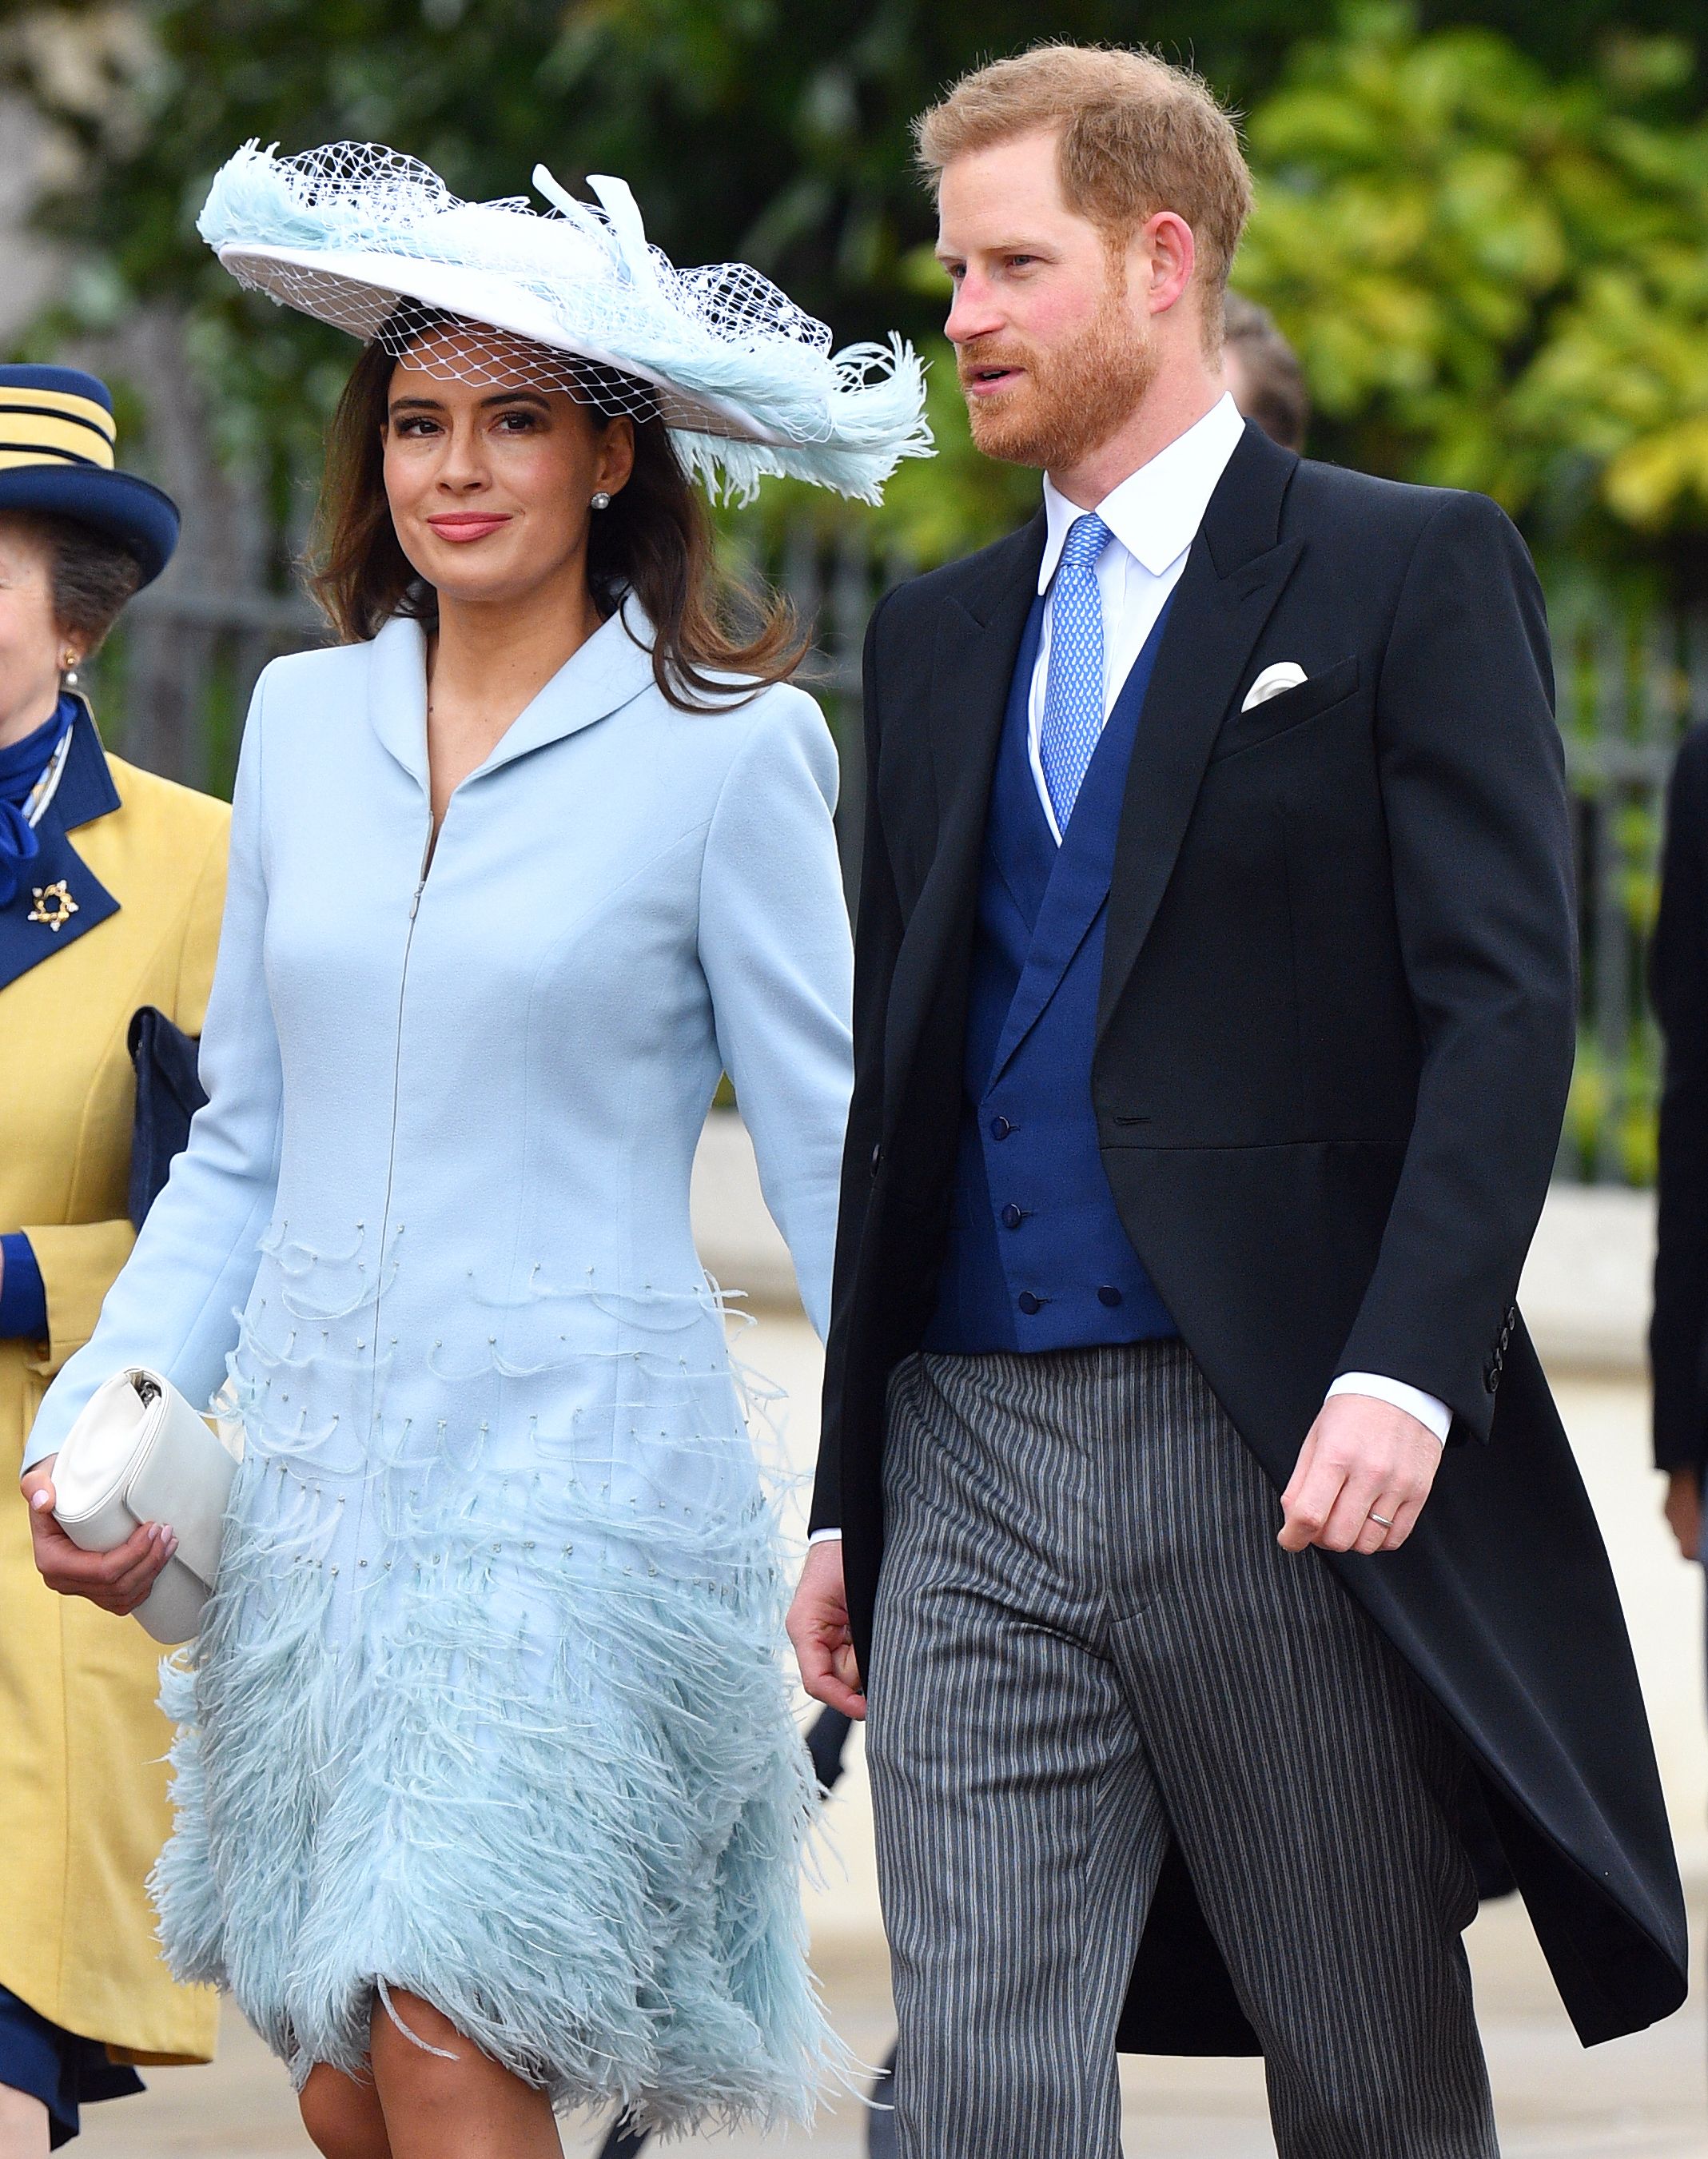 Prince William Prince Charles More Royals Helped Sophie Winkleman After Her Car Crash